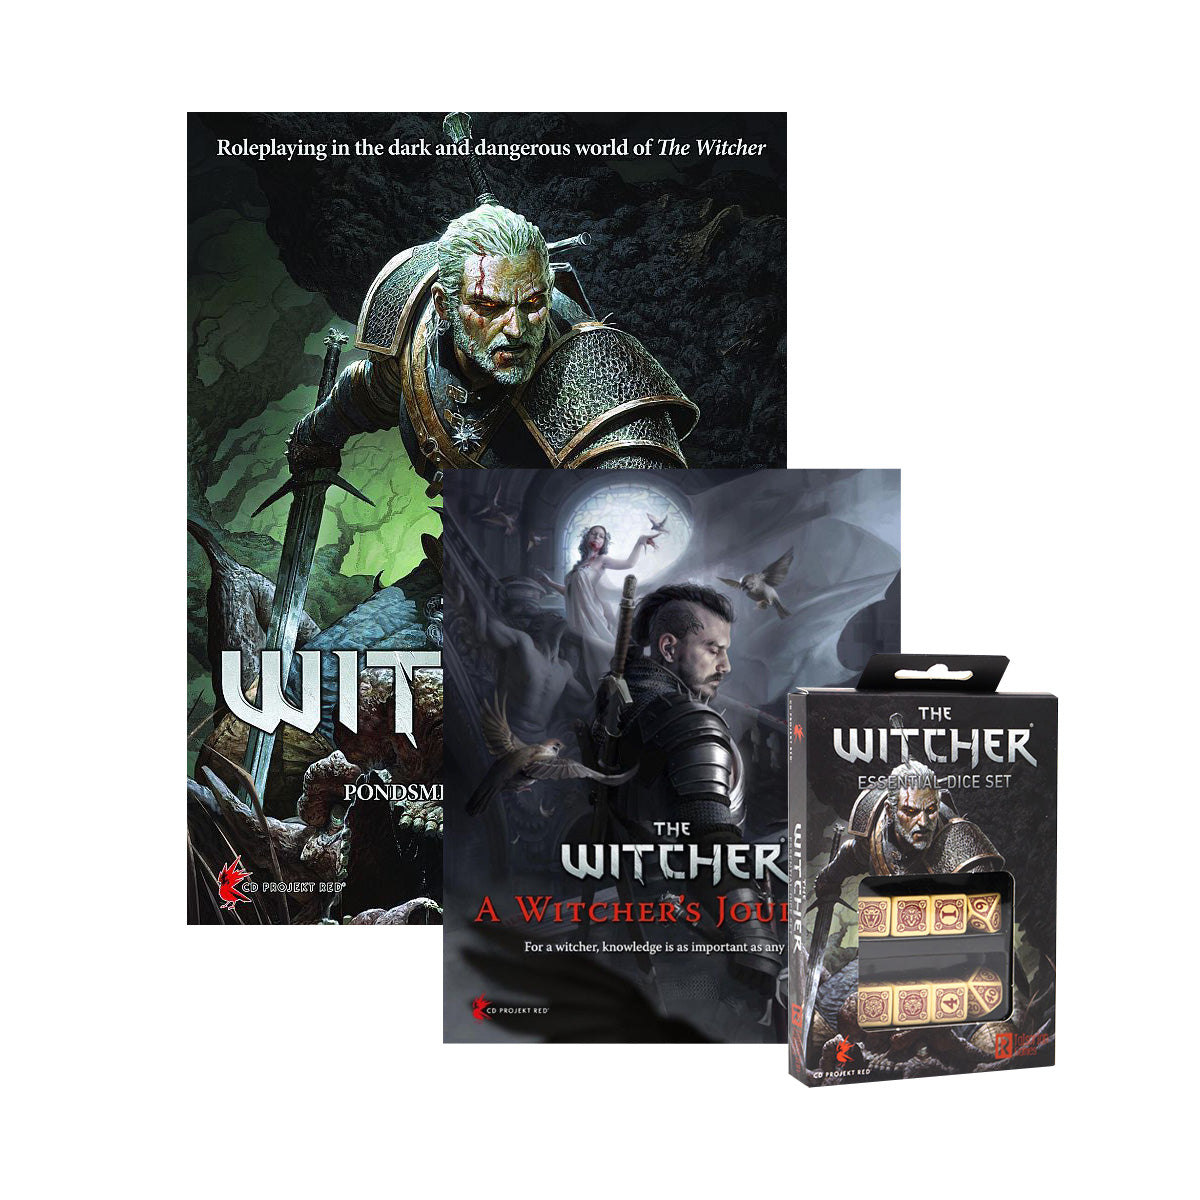 The Witcher RPG: Essentials Bundle